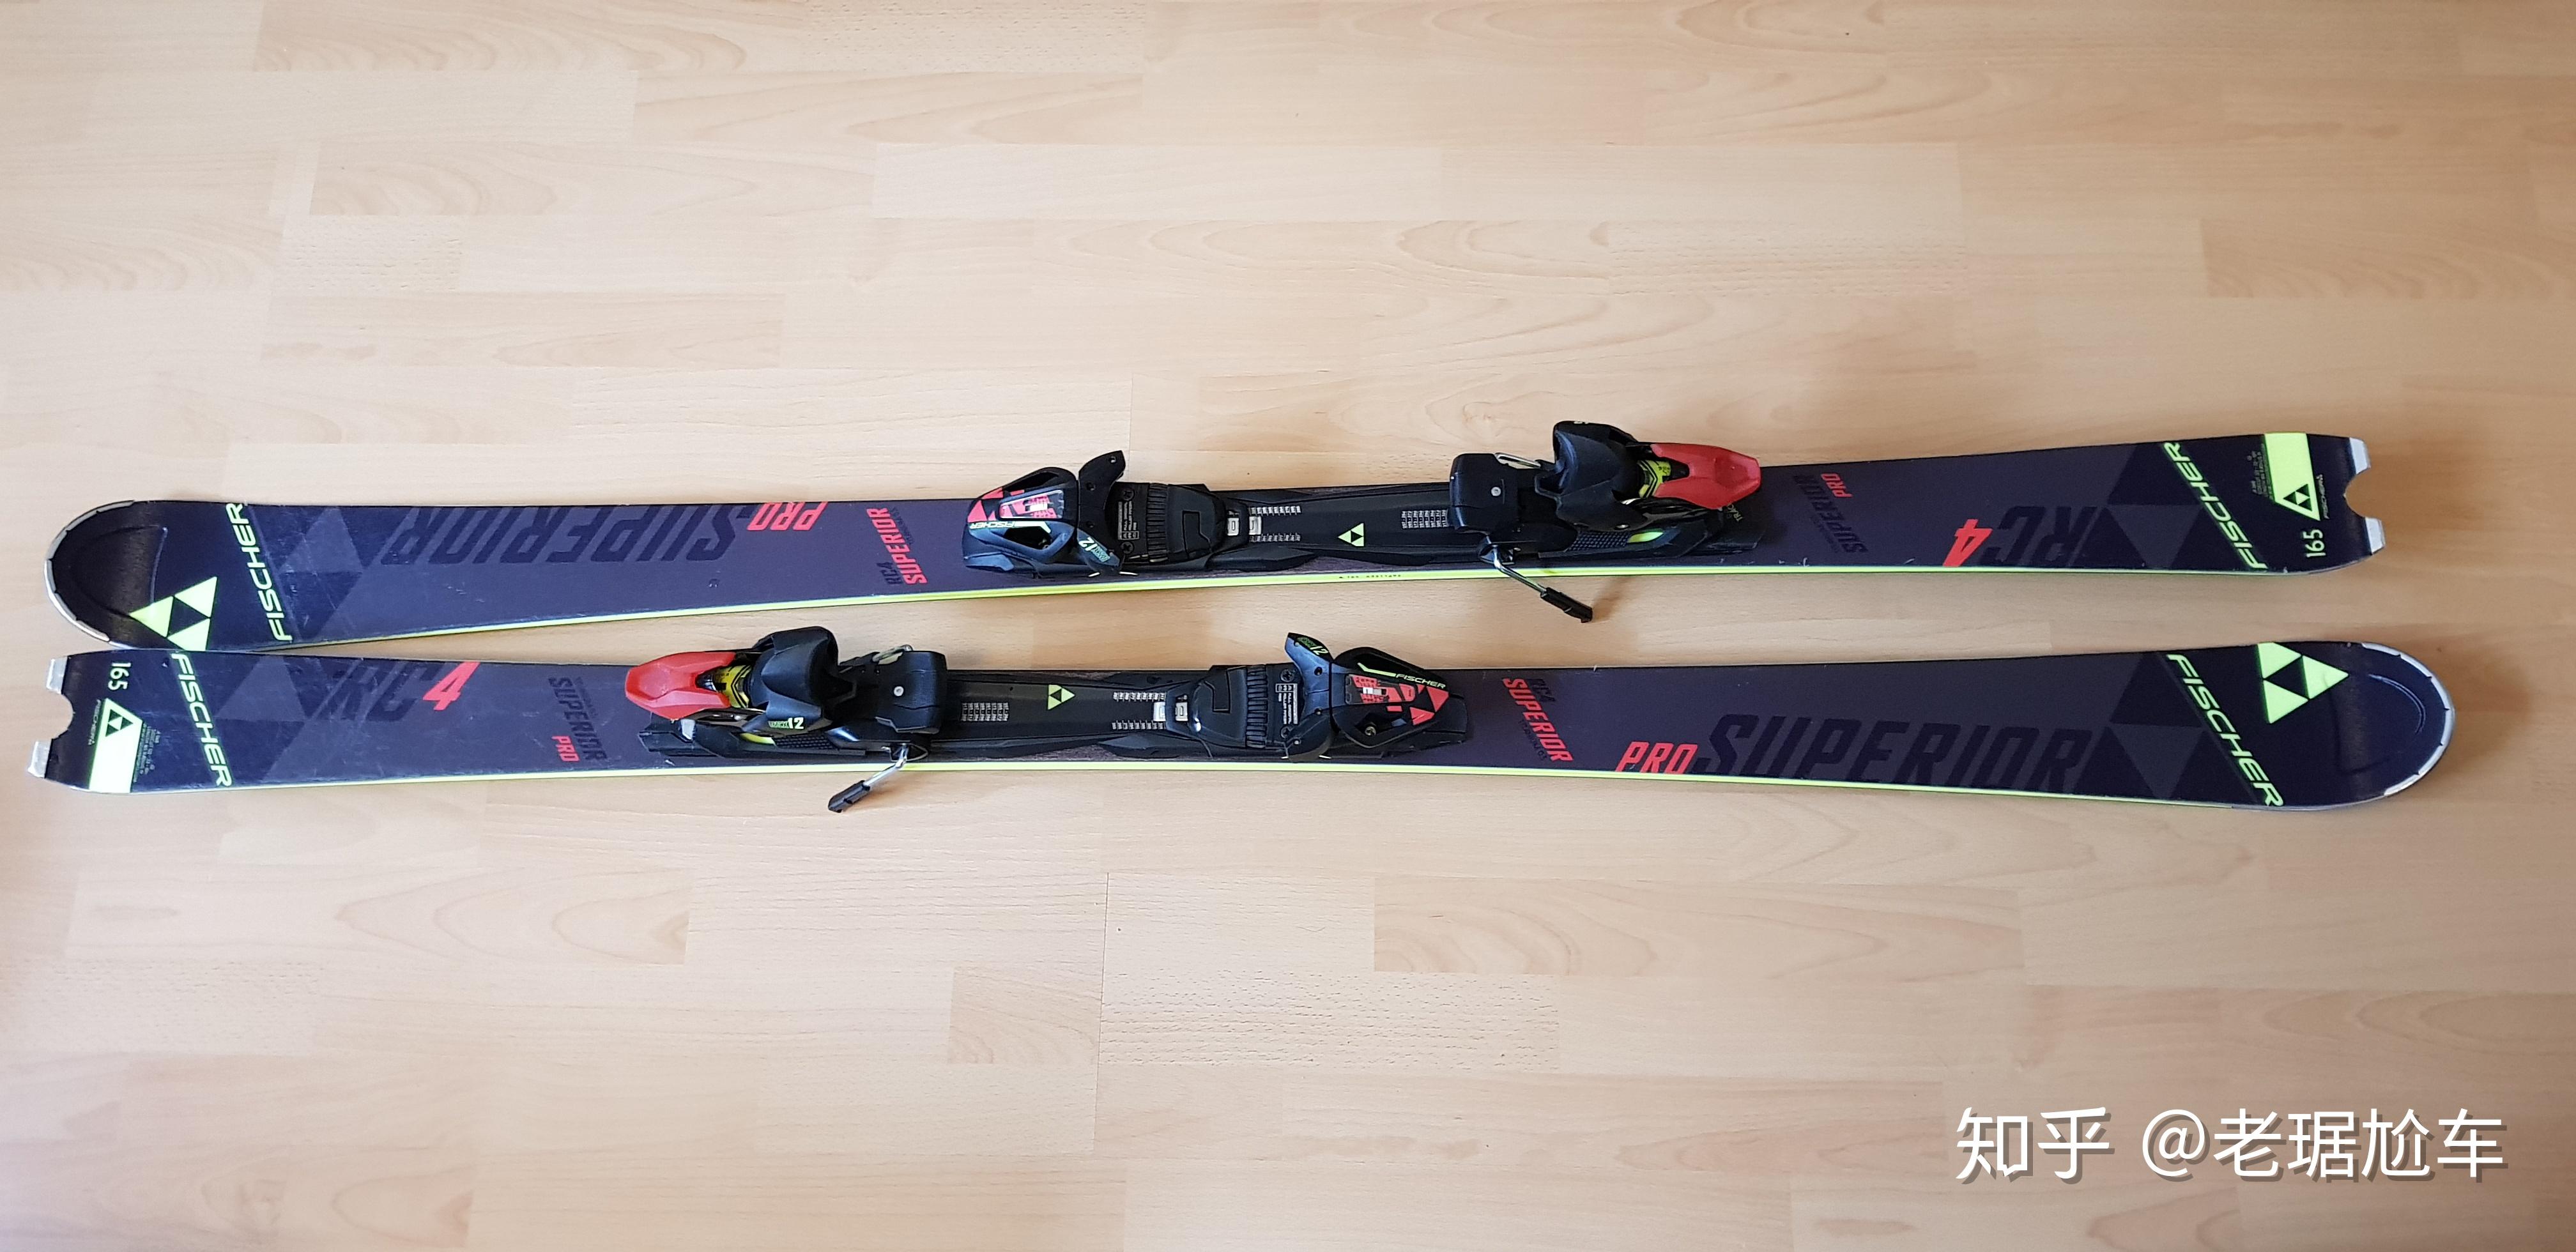 双板滑雪平行式图片